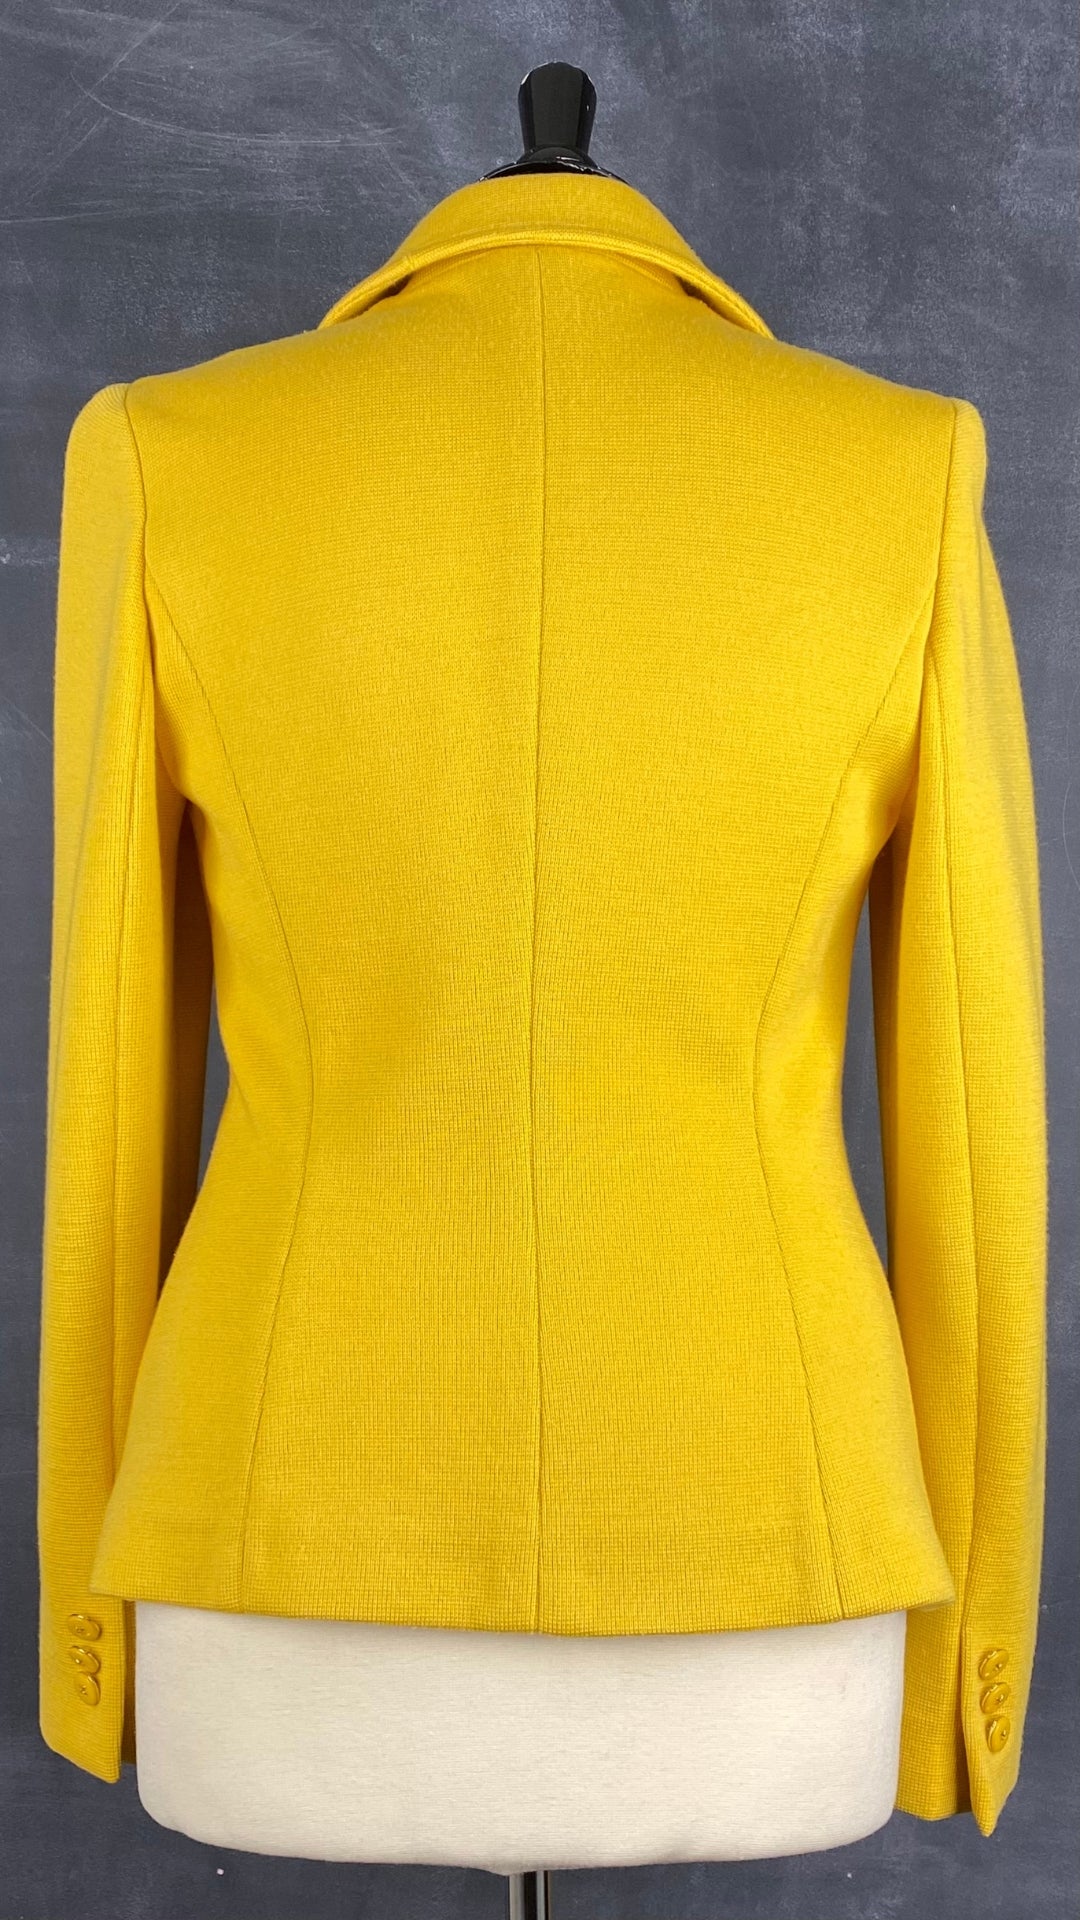 Veste style blazer jaune doré en laine Luisa Spagnoli, taille small. Vue de dos.